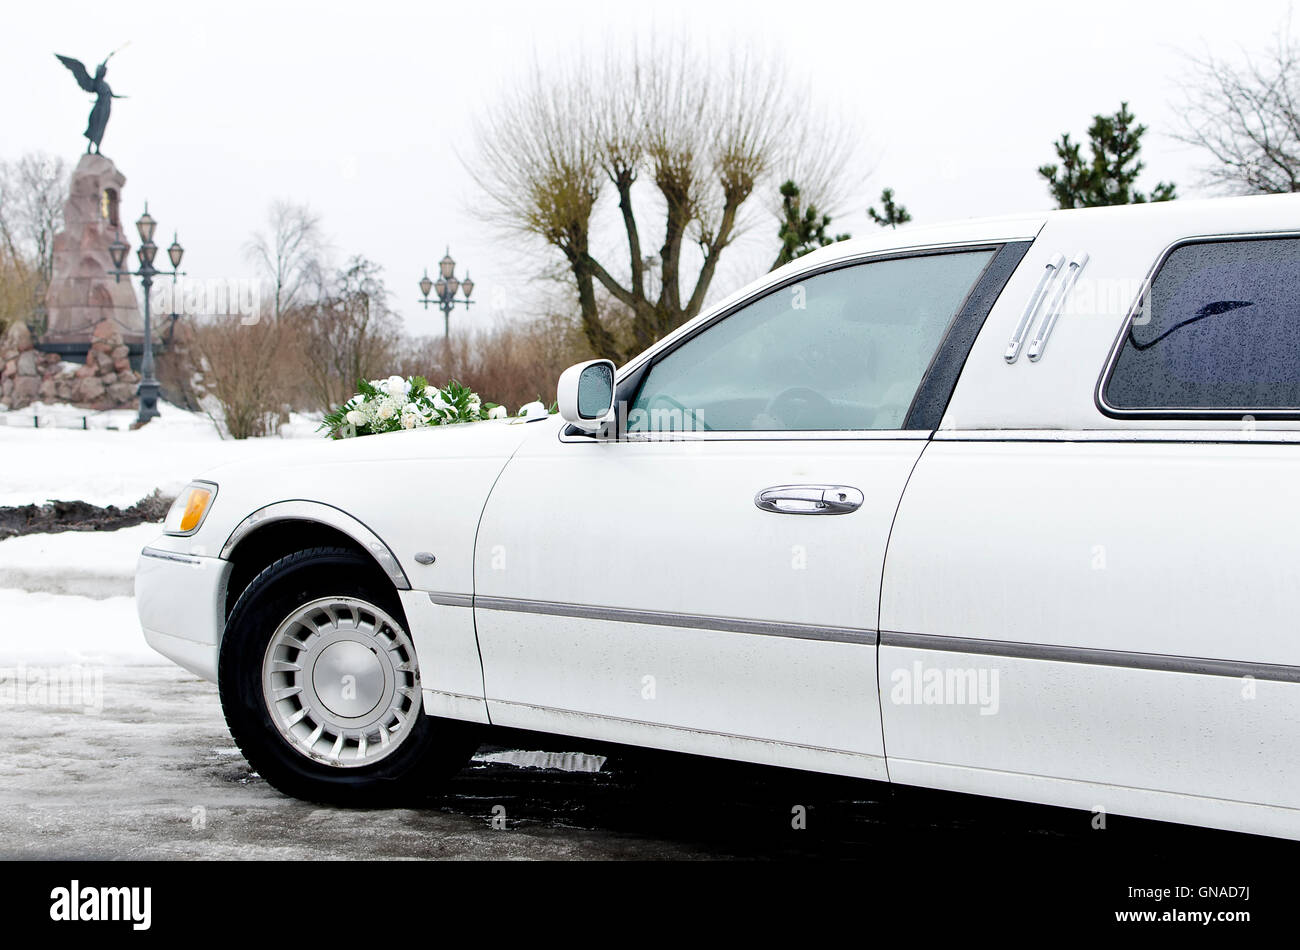 Une partie de voiture de mariage, limousine blanche avec des fleurs. Banque D'Images